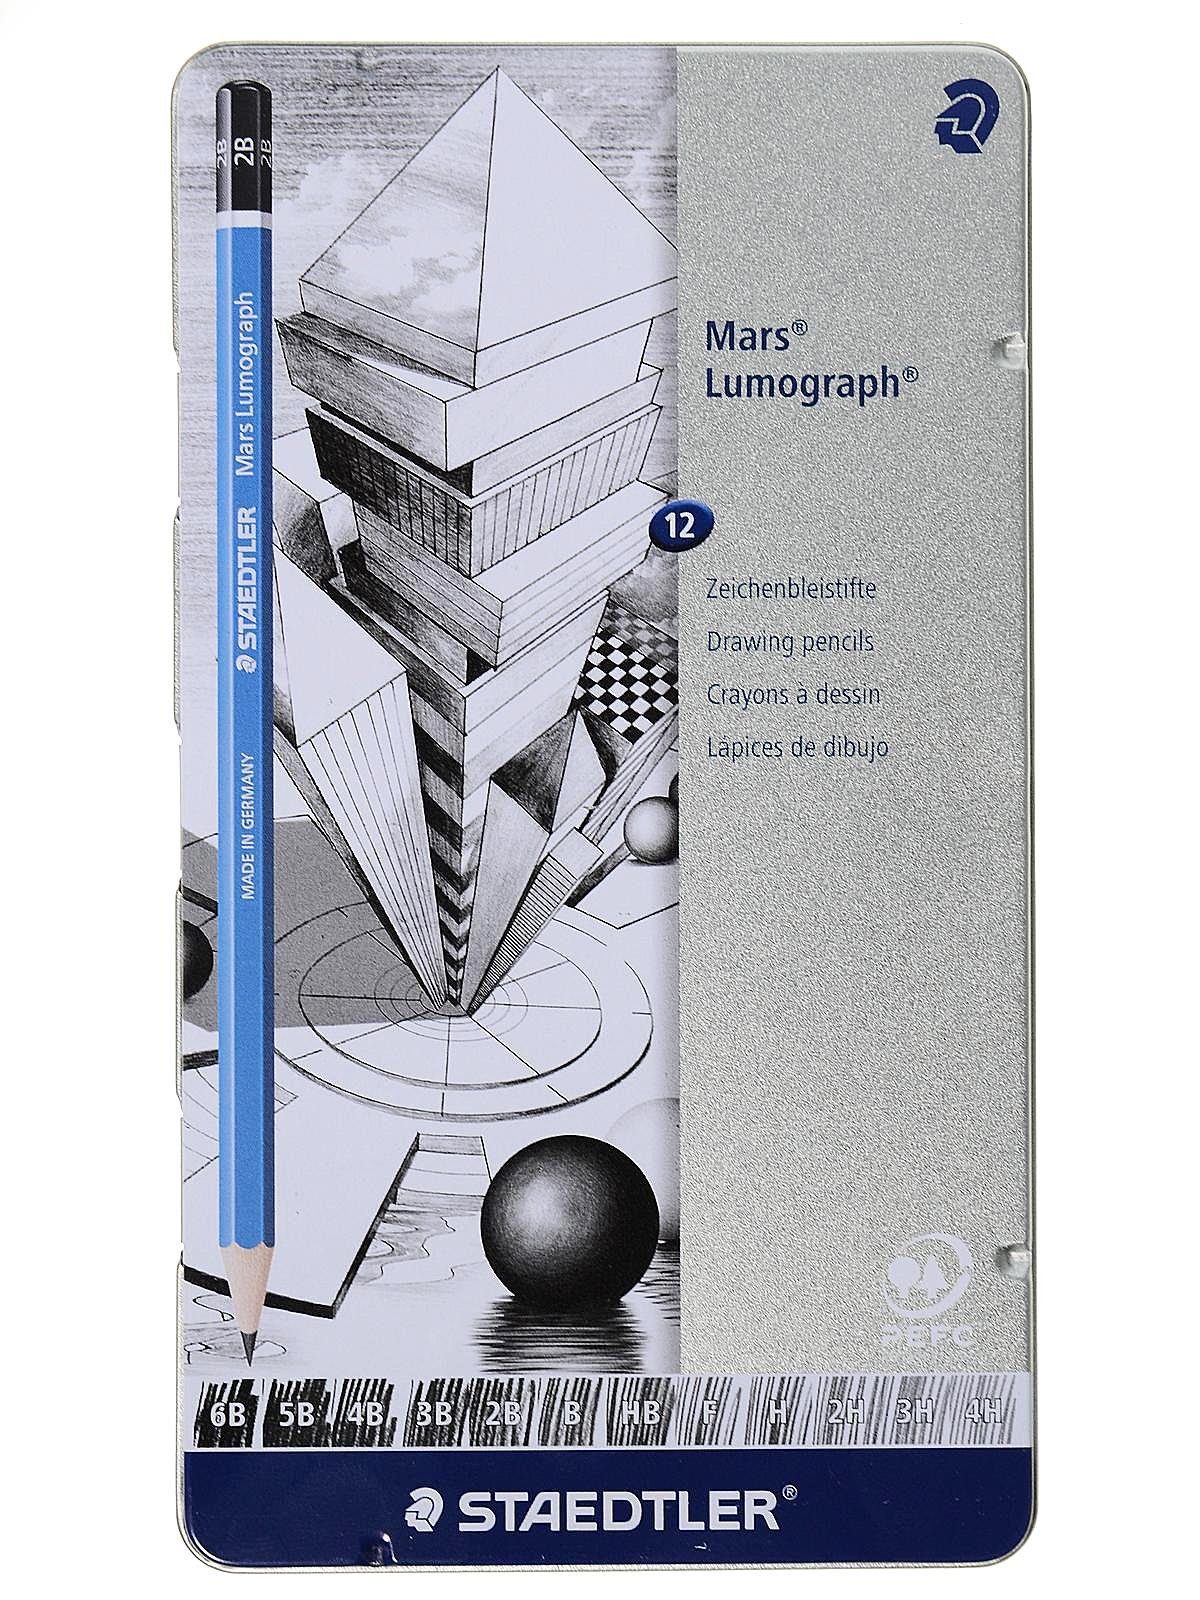 Staedtler Mars Lumograph Drawing Pencils | Pencils.com